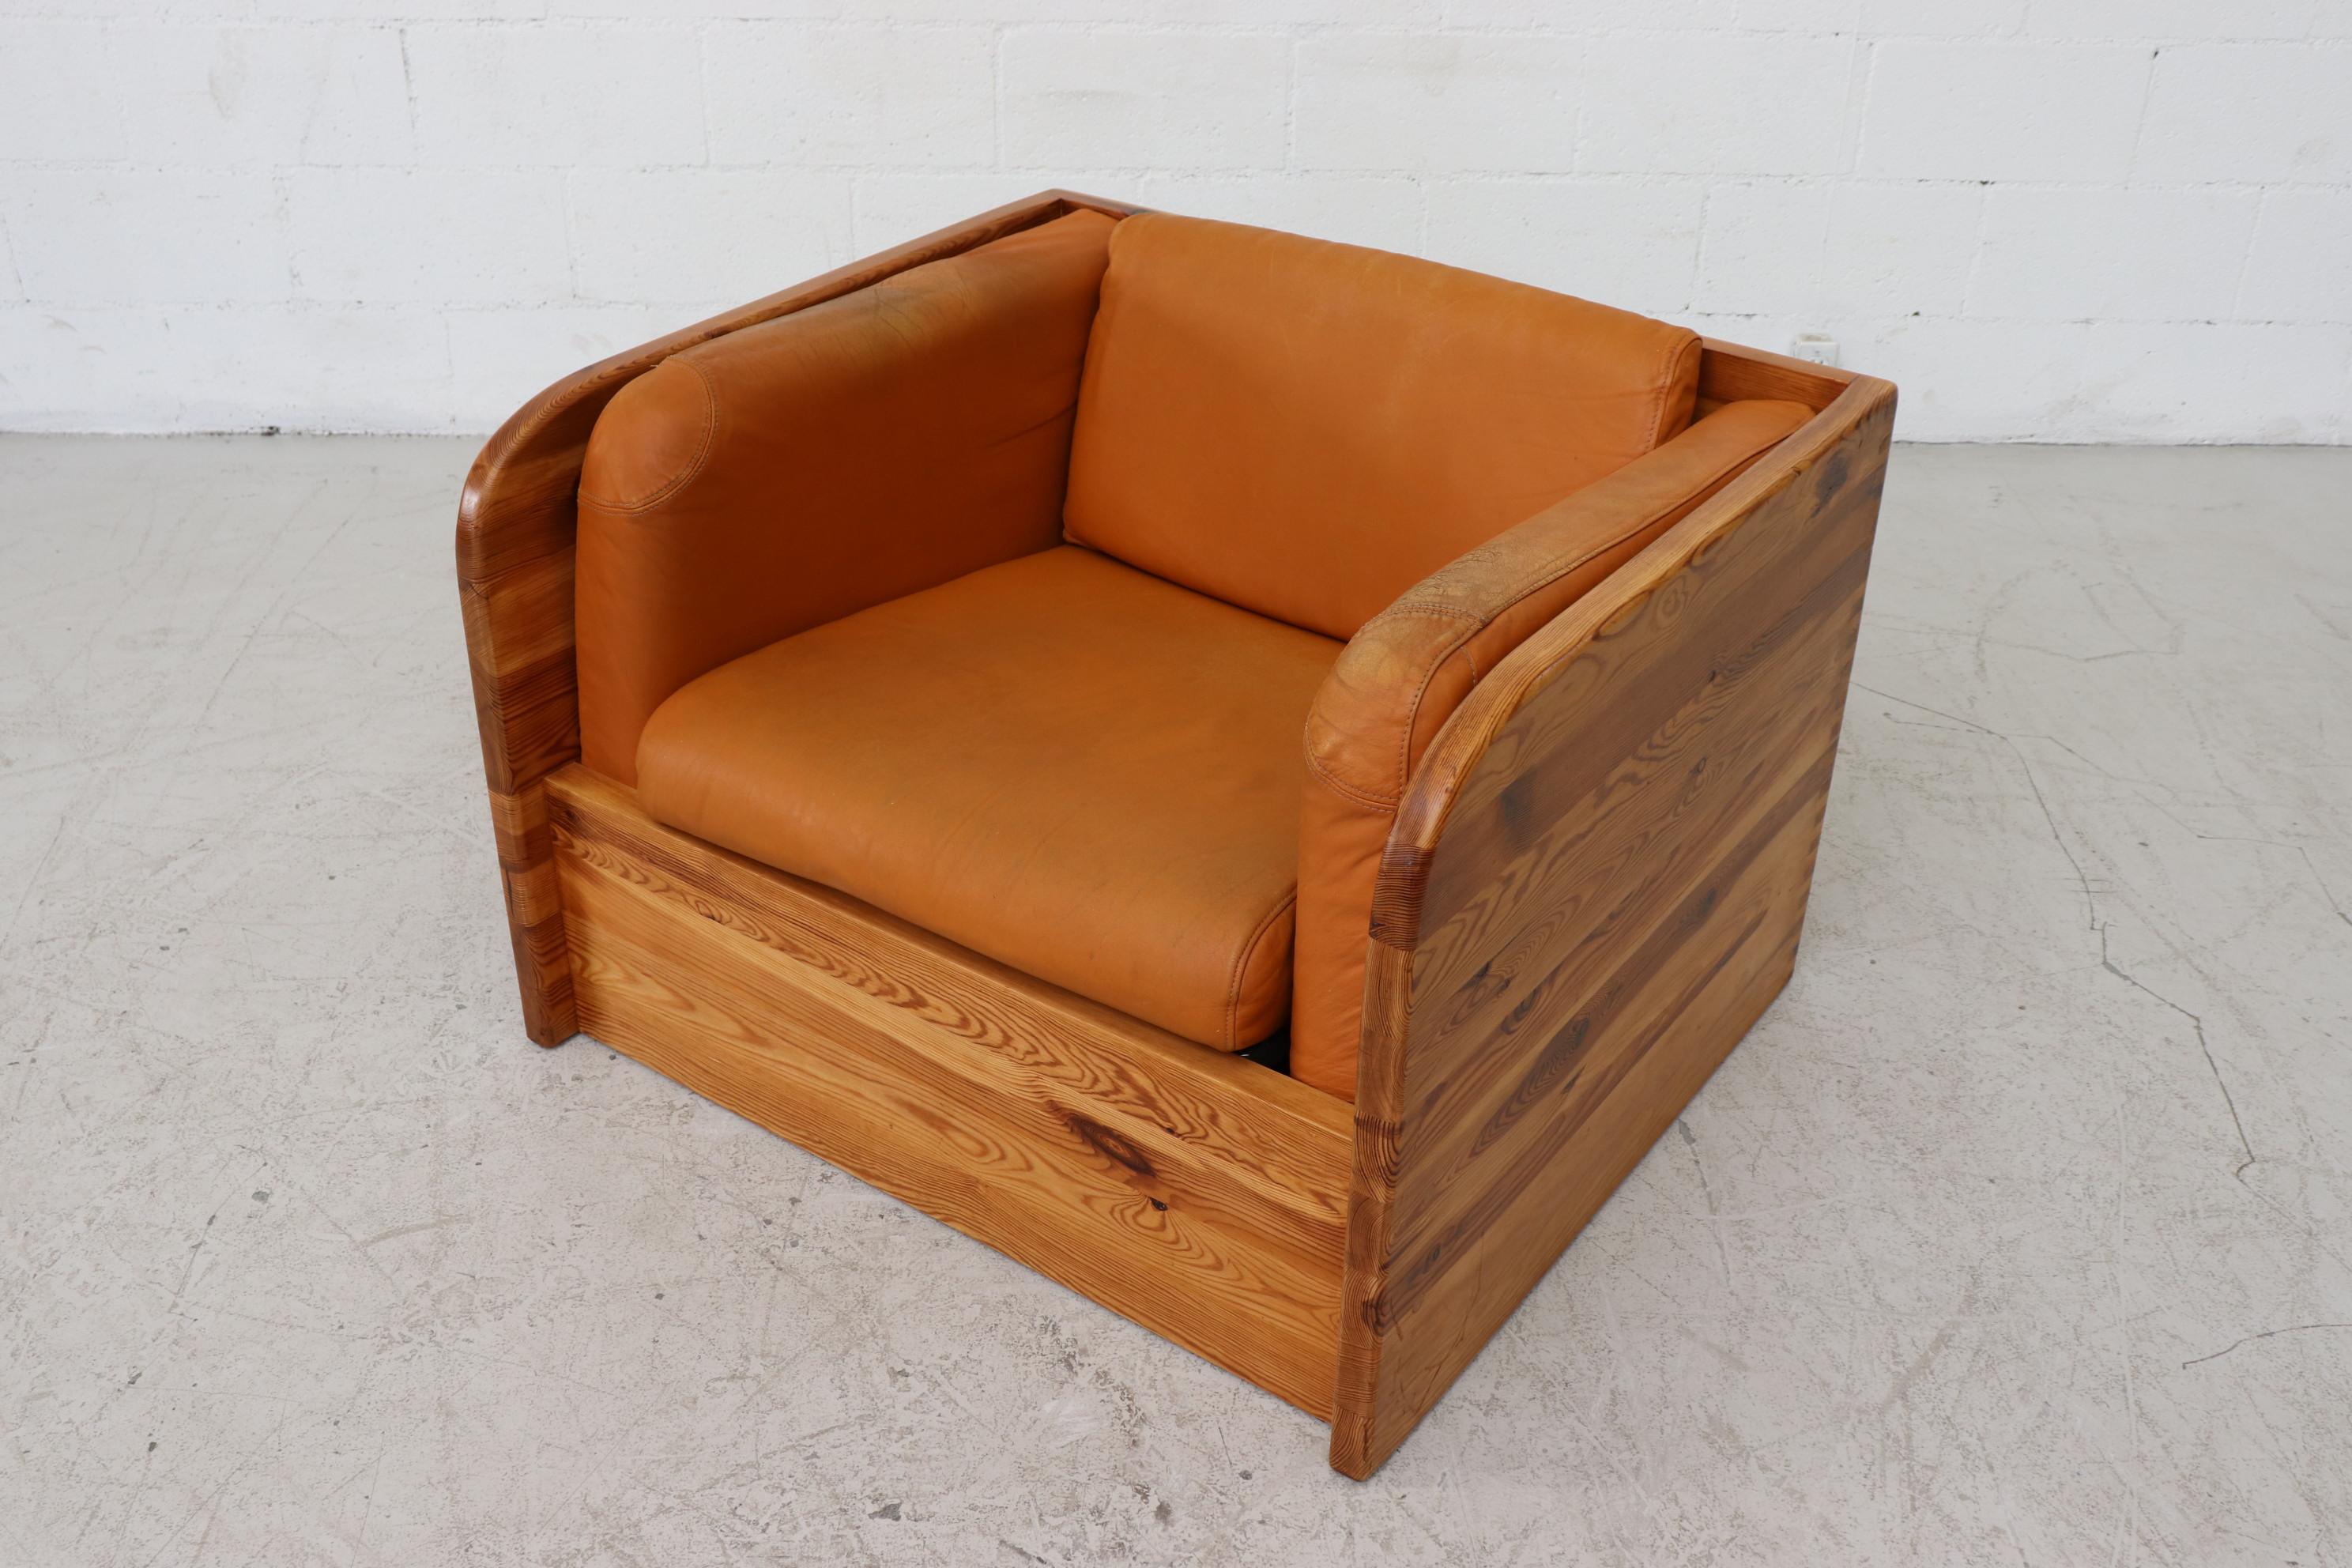 Dutch Pine Ate van Apeldoorn Crate Style Lounge Chair